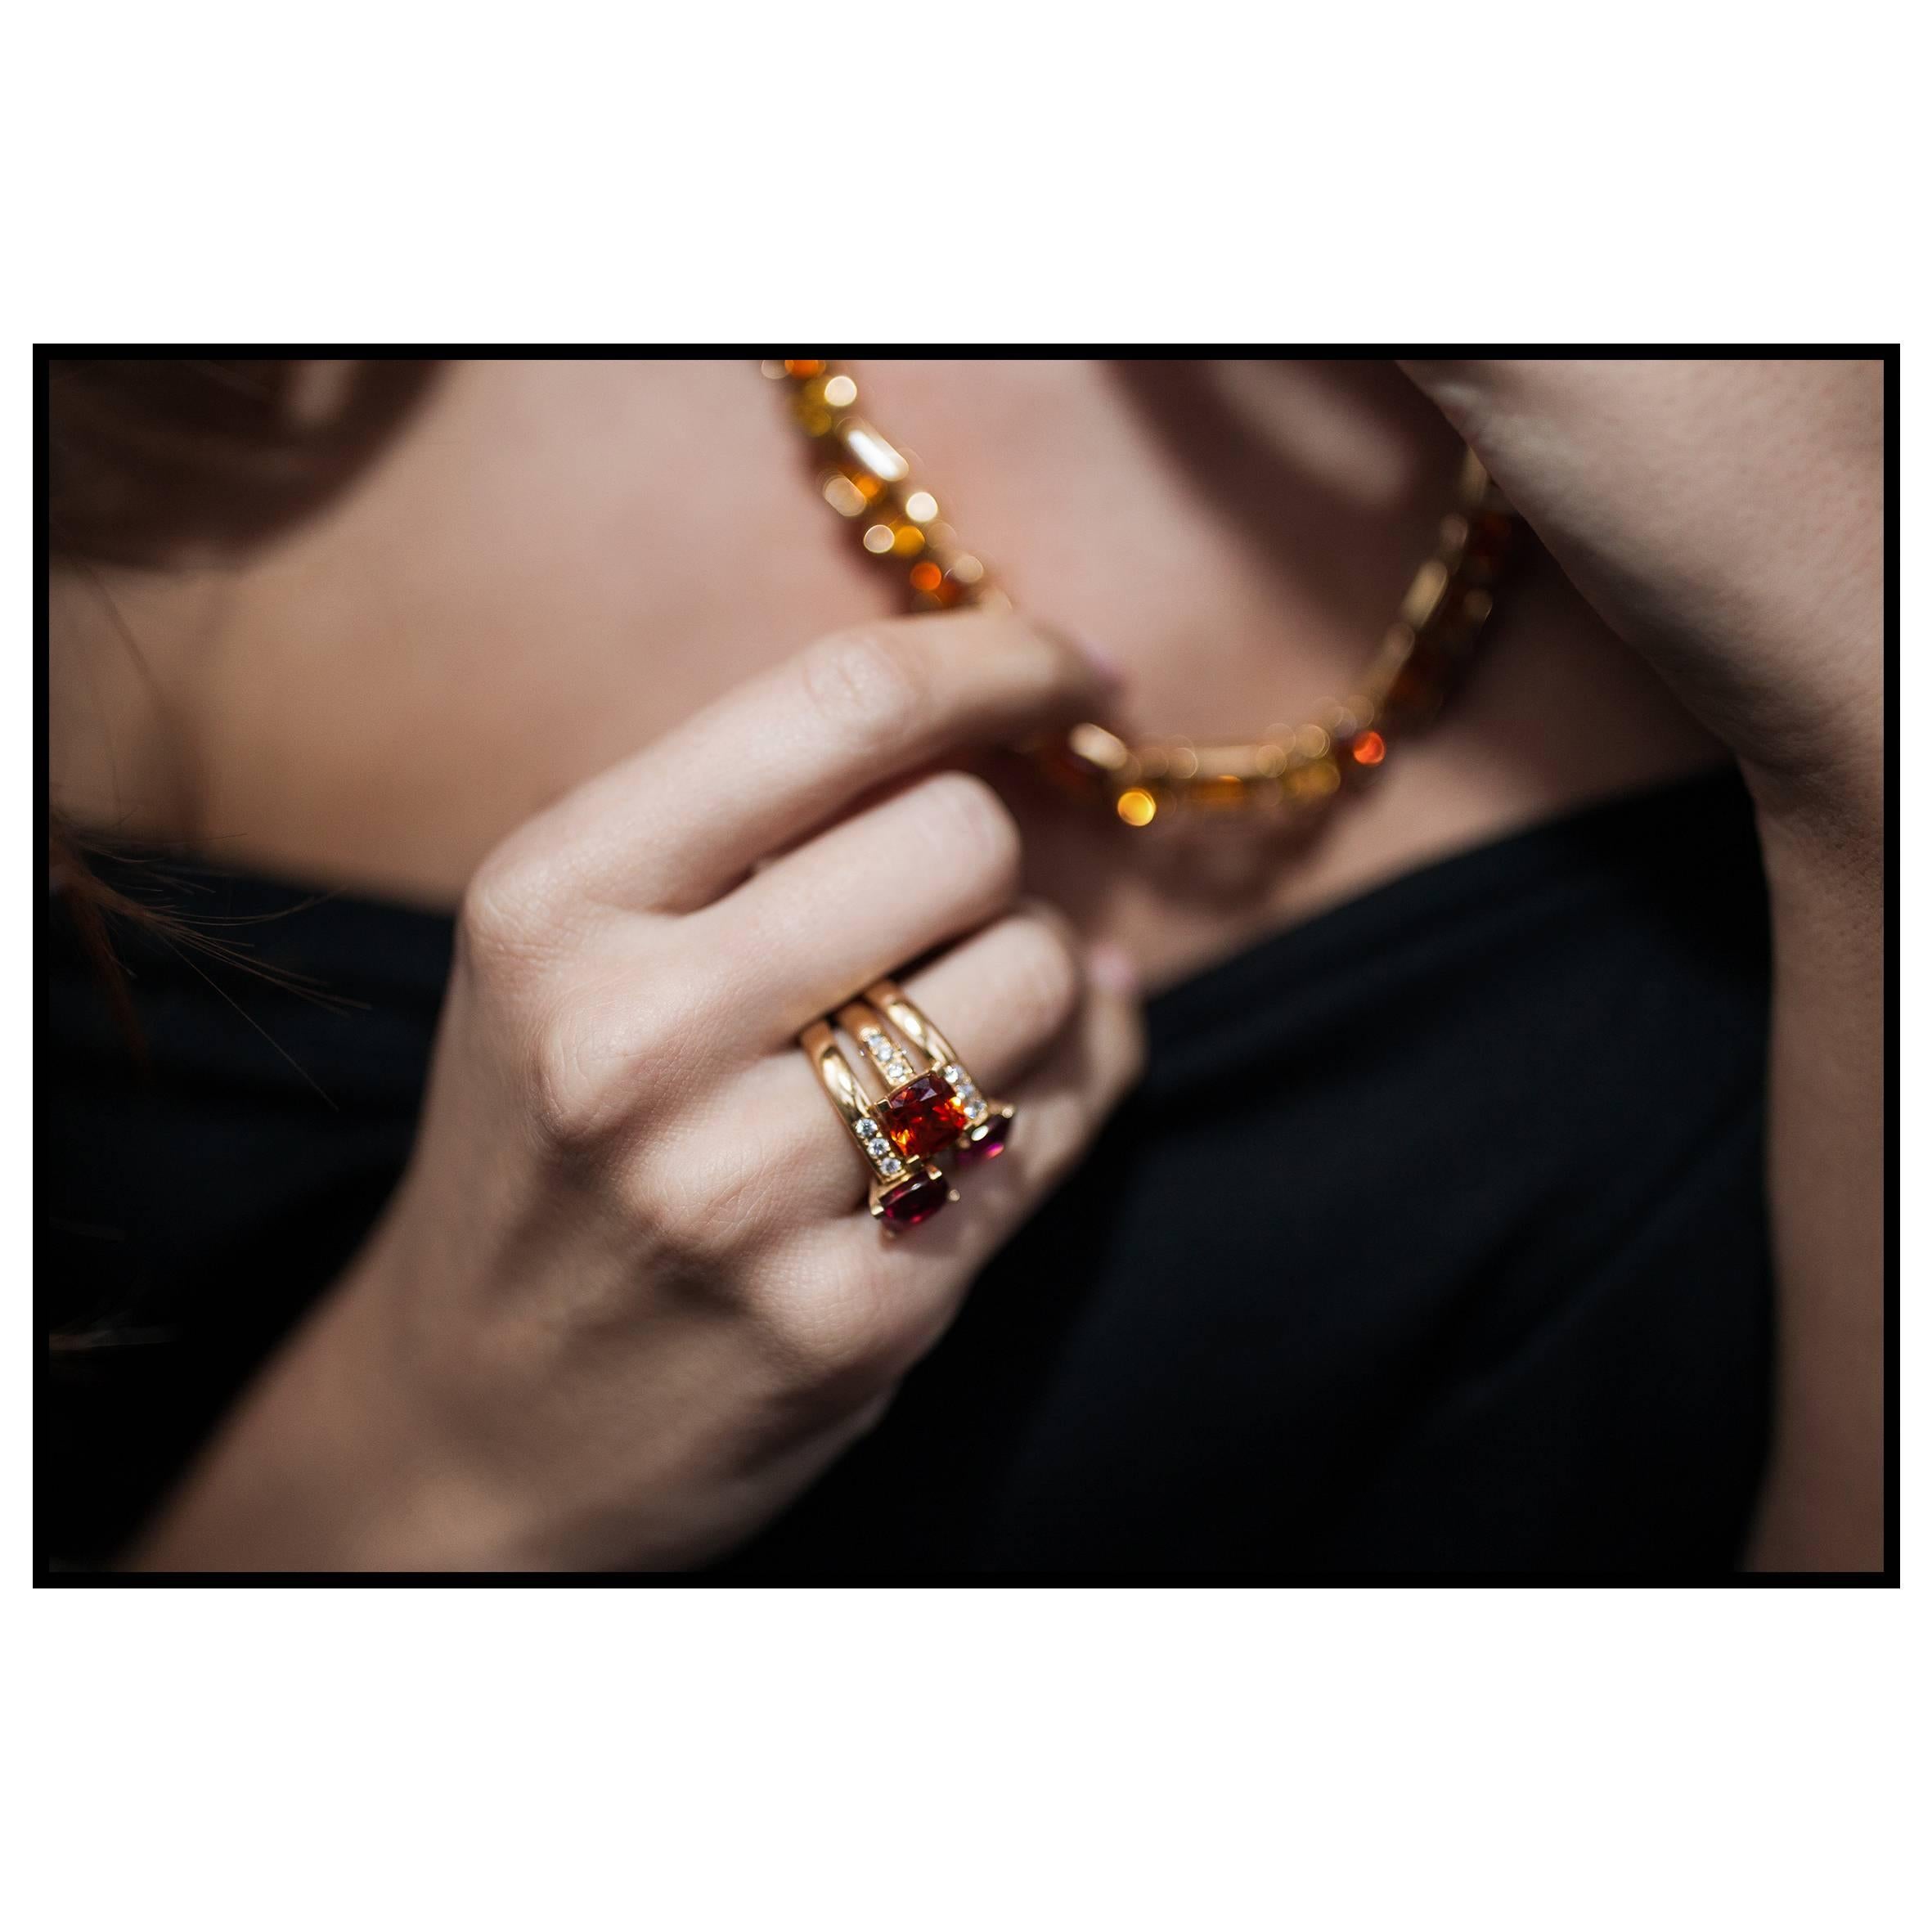 Thomas Leyser est réputé pour ses créations de bijoux contemporains utilisant des pierres précieuses fines.

Ce bracelet en or rose 18 carats contient 21 citrines facettées de qualité supérieure, de formes et de couleurs différentes (18,02 carats).